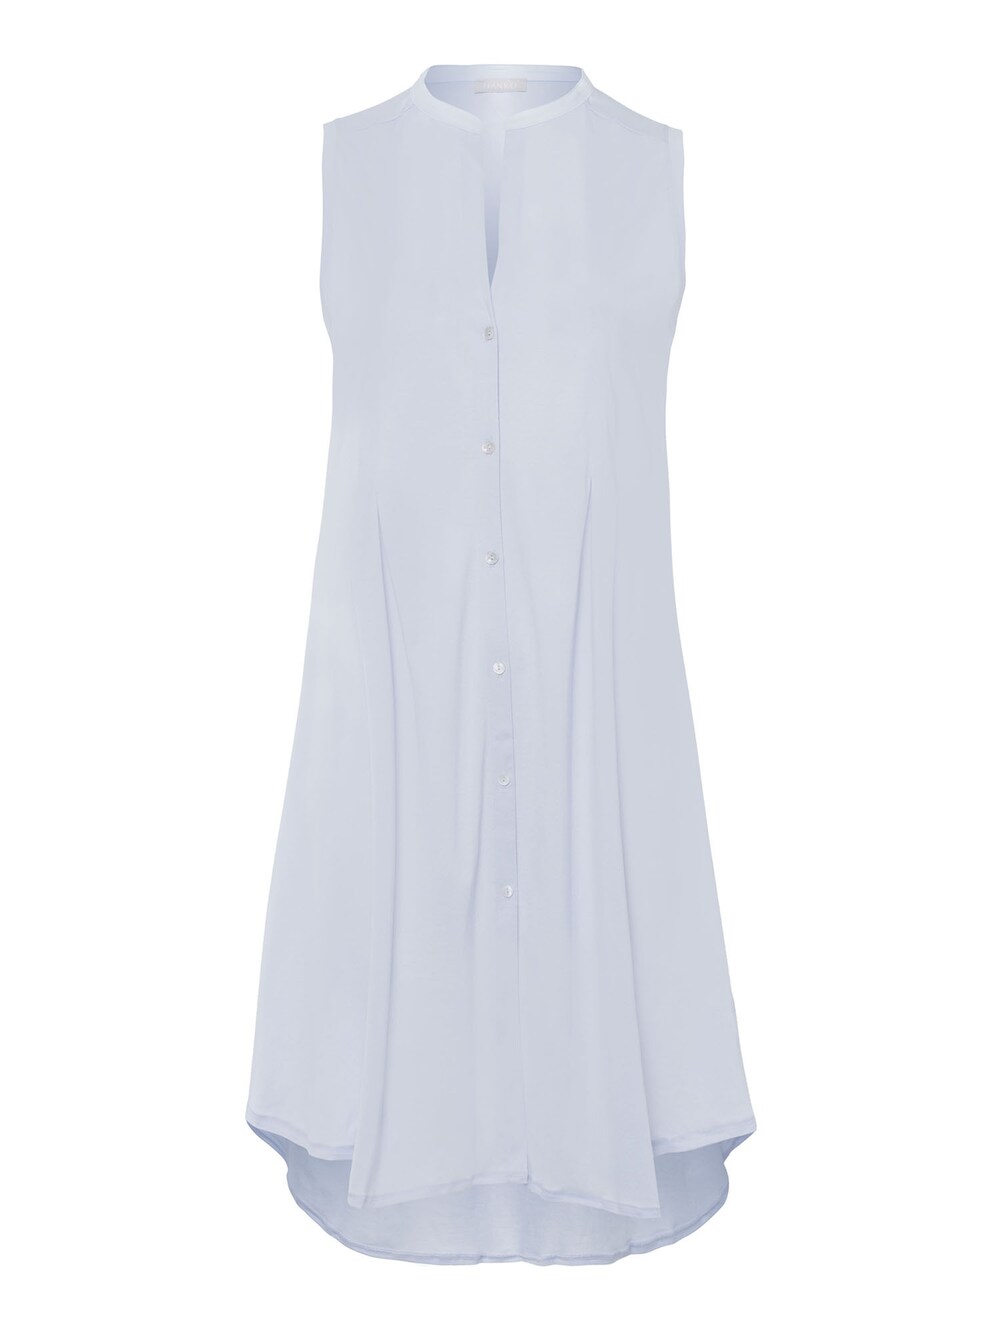 Ночная рубашка Hanro Cotton Deluxe 90cm, светло-синий фото